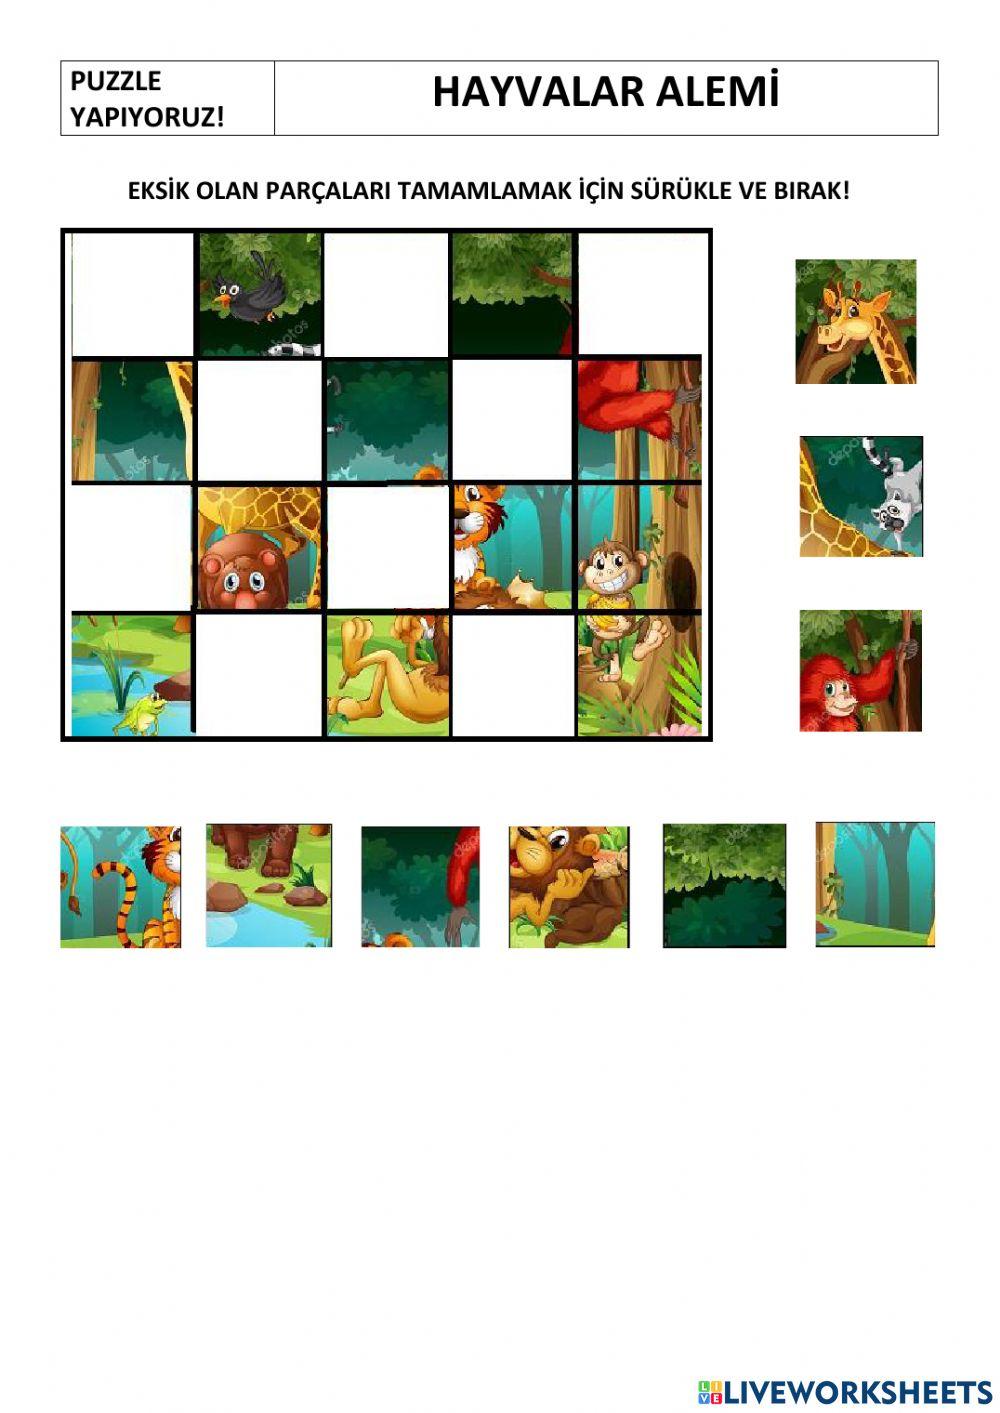 Hayvanlar alemi puzzle